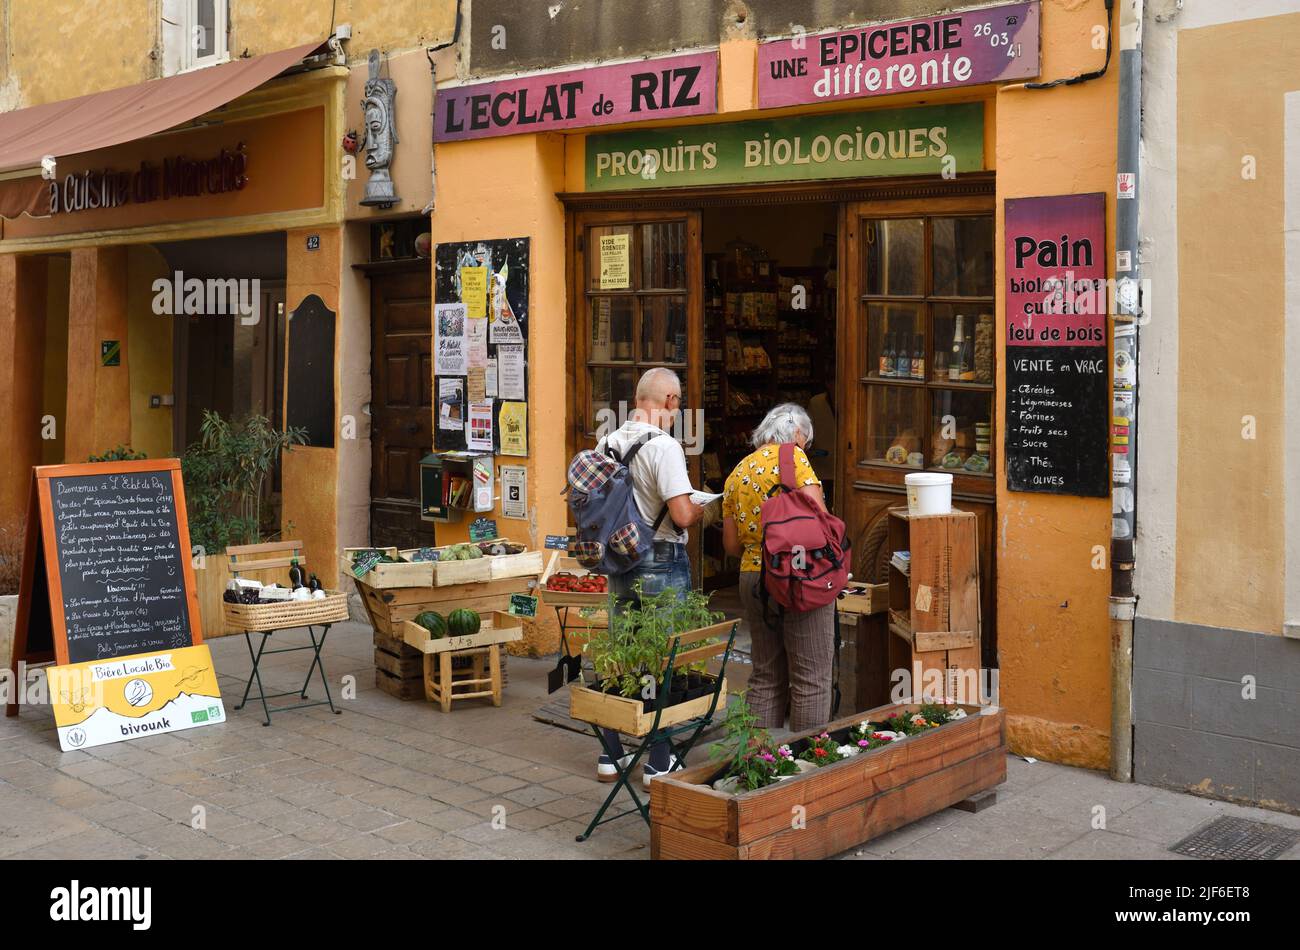 Kunden oder Touristen außerhalb eines Health-Food-Shops, eines Geschäfts oder eines Whole-Foods-Lebensmittelgeschäftes Nyons France Stockfoto